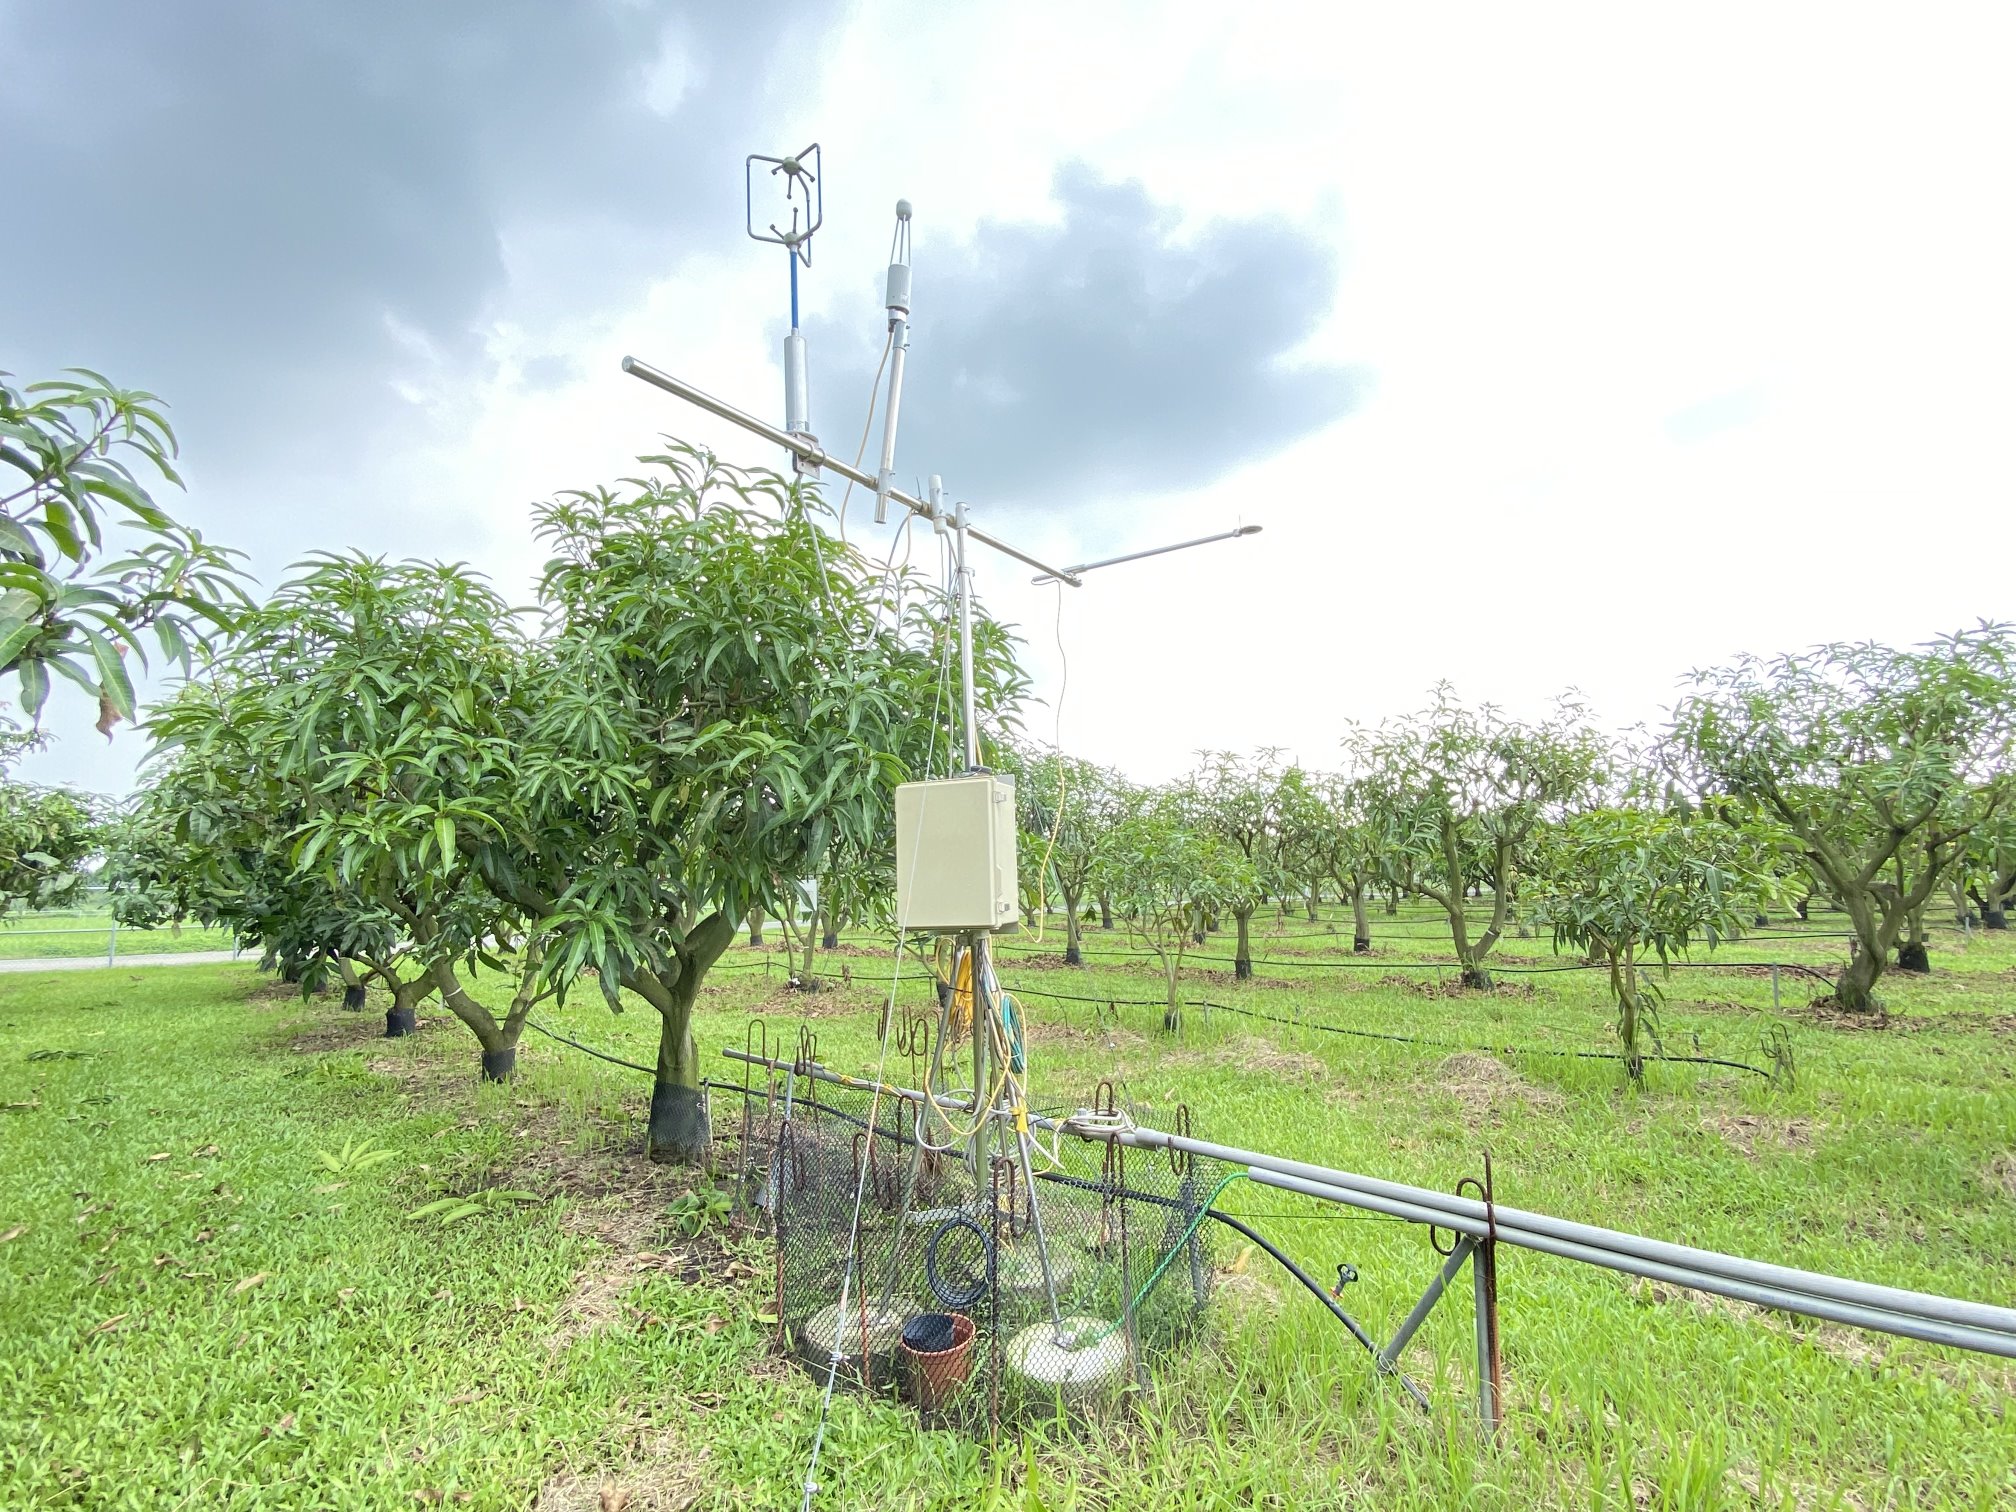 芒果園蒸發散量調查裝置，可作為灌溉參考指標